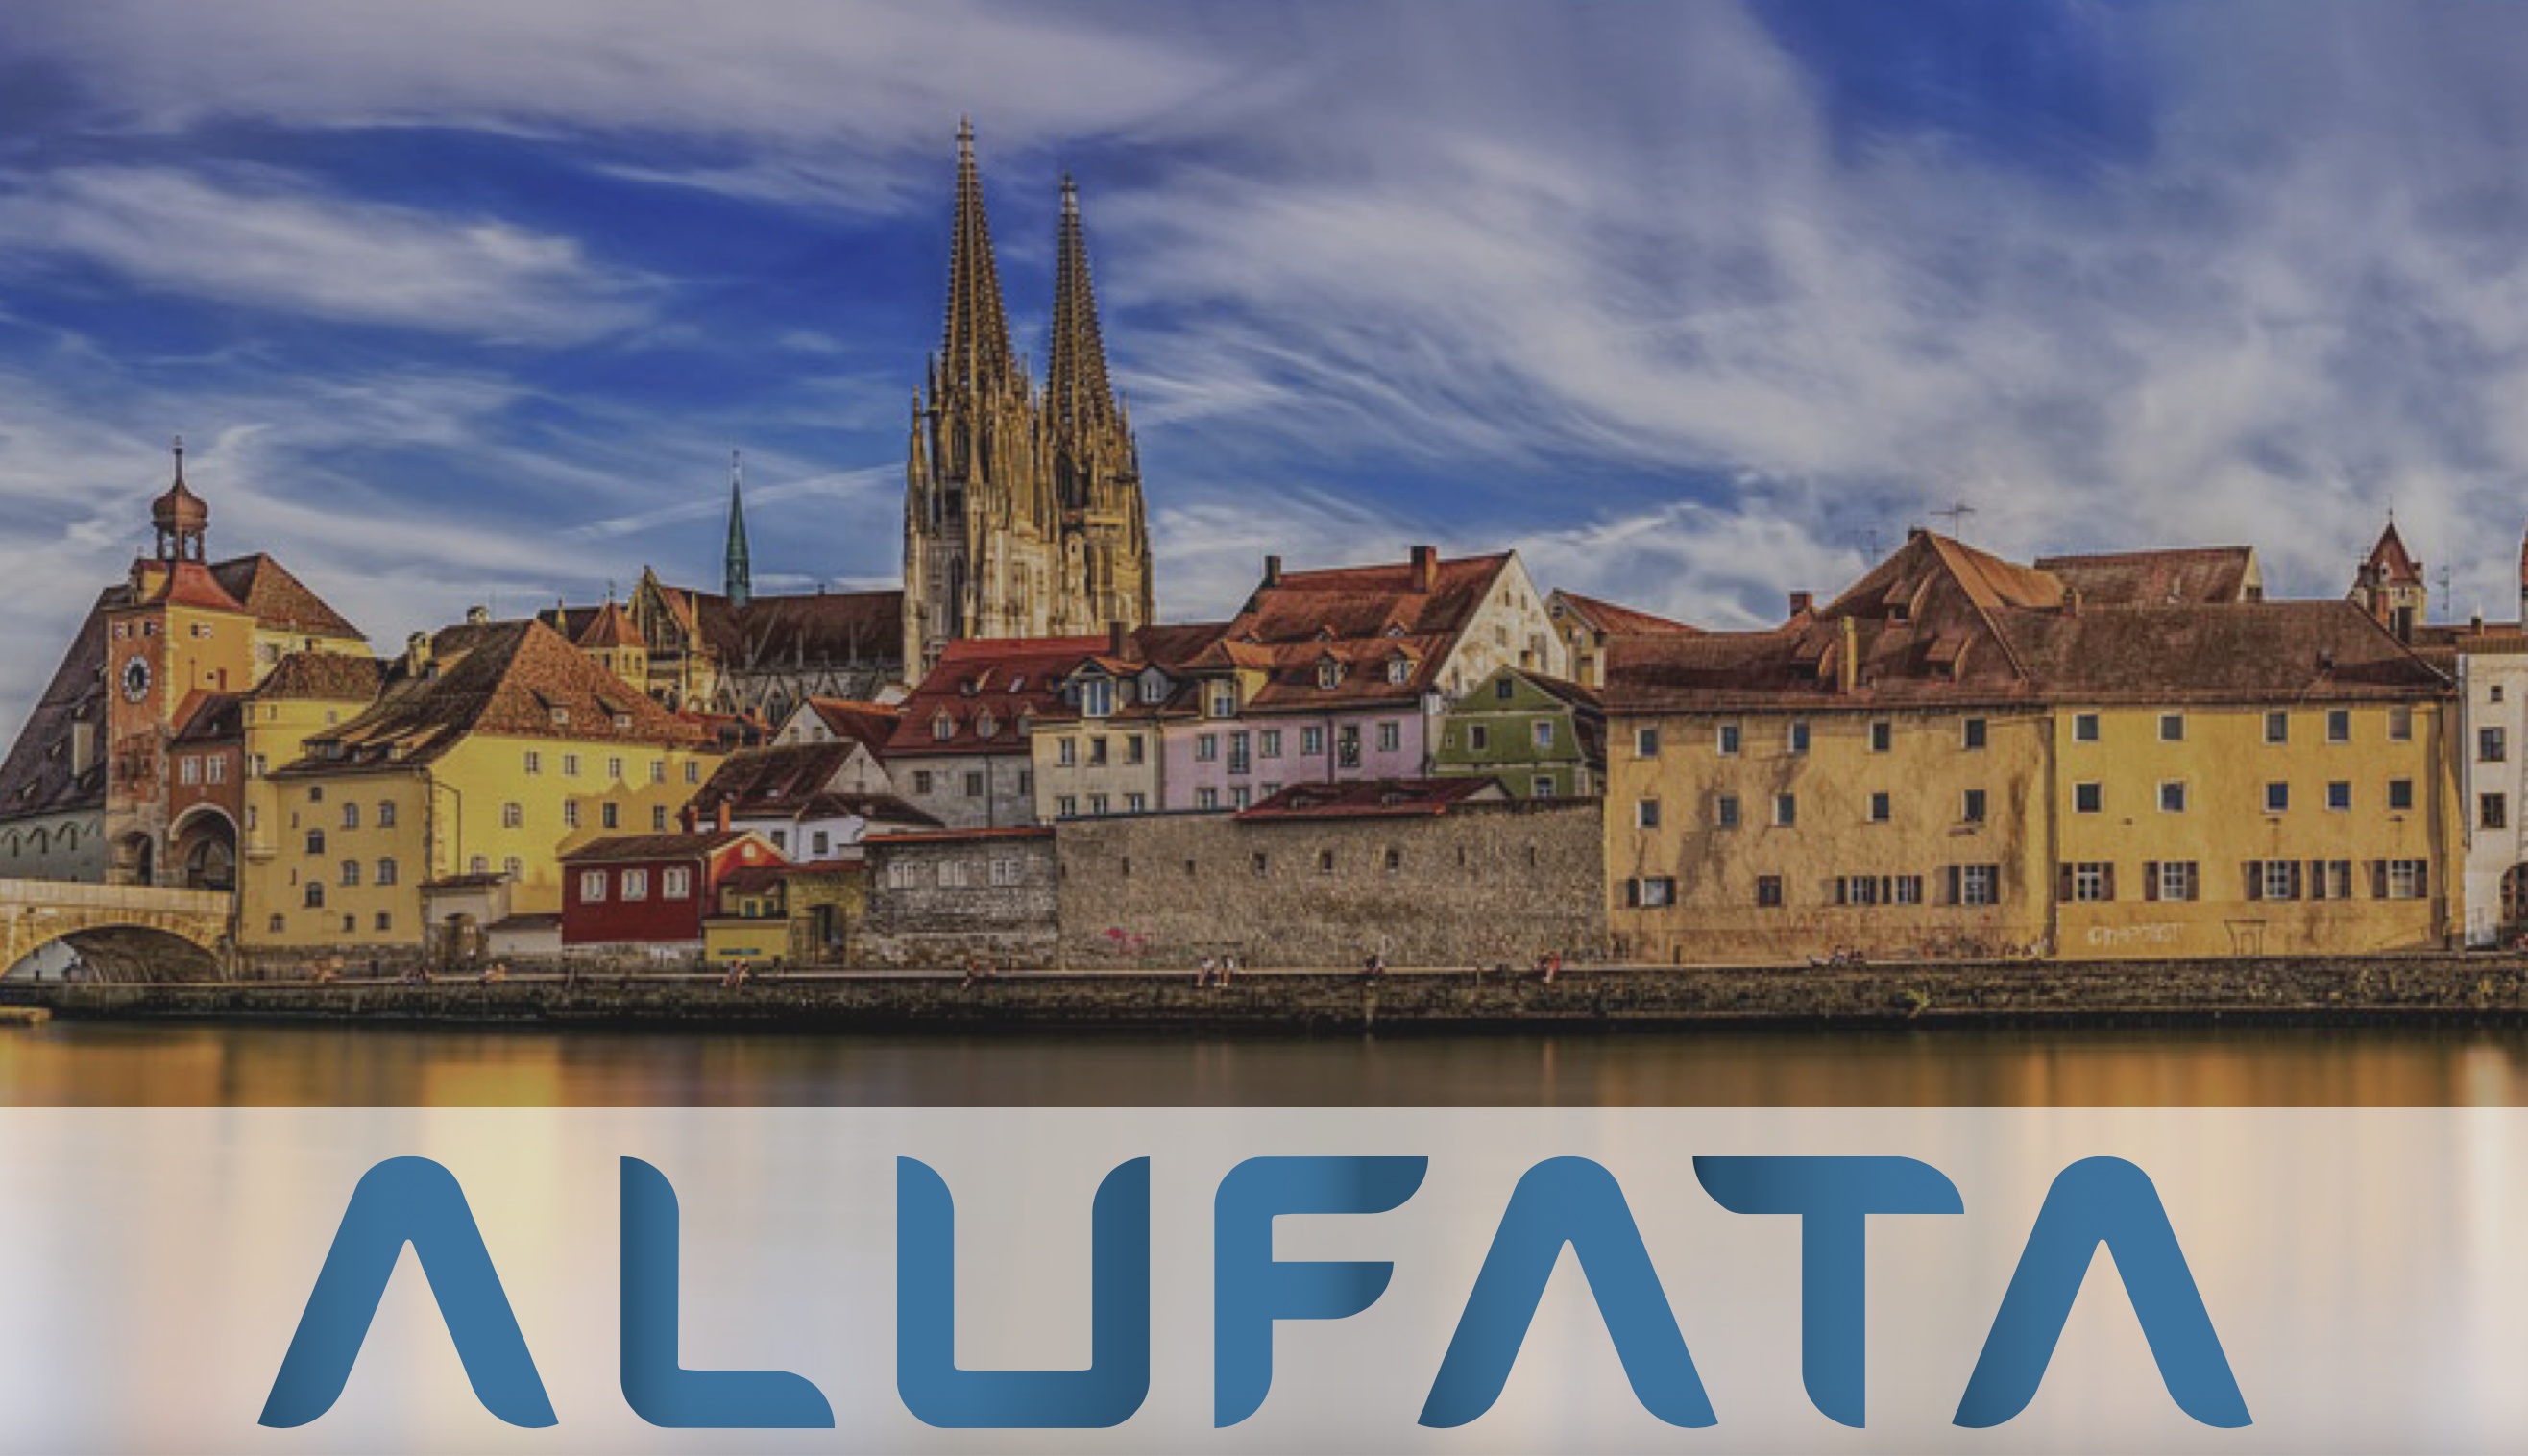 Alumni Fachtagung des BdZA - AluFaTa vom 17.02. bis 19.02.2023 in Regensburg